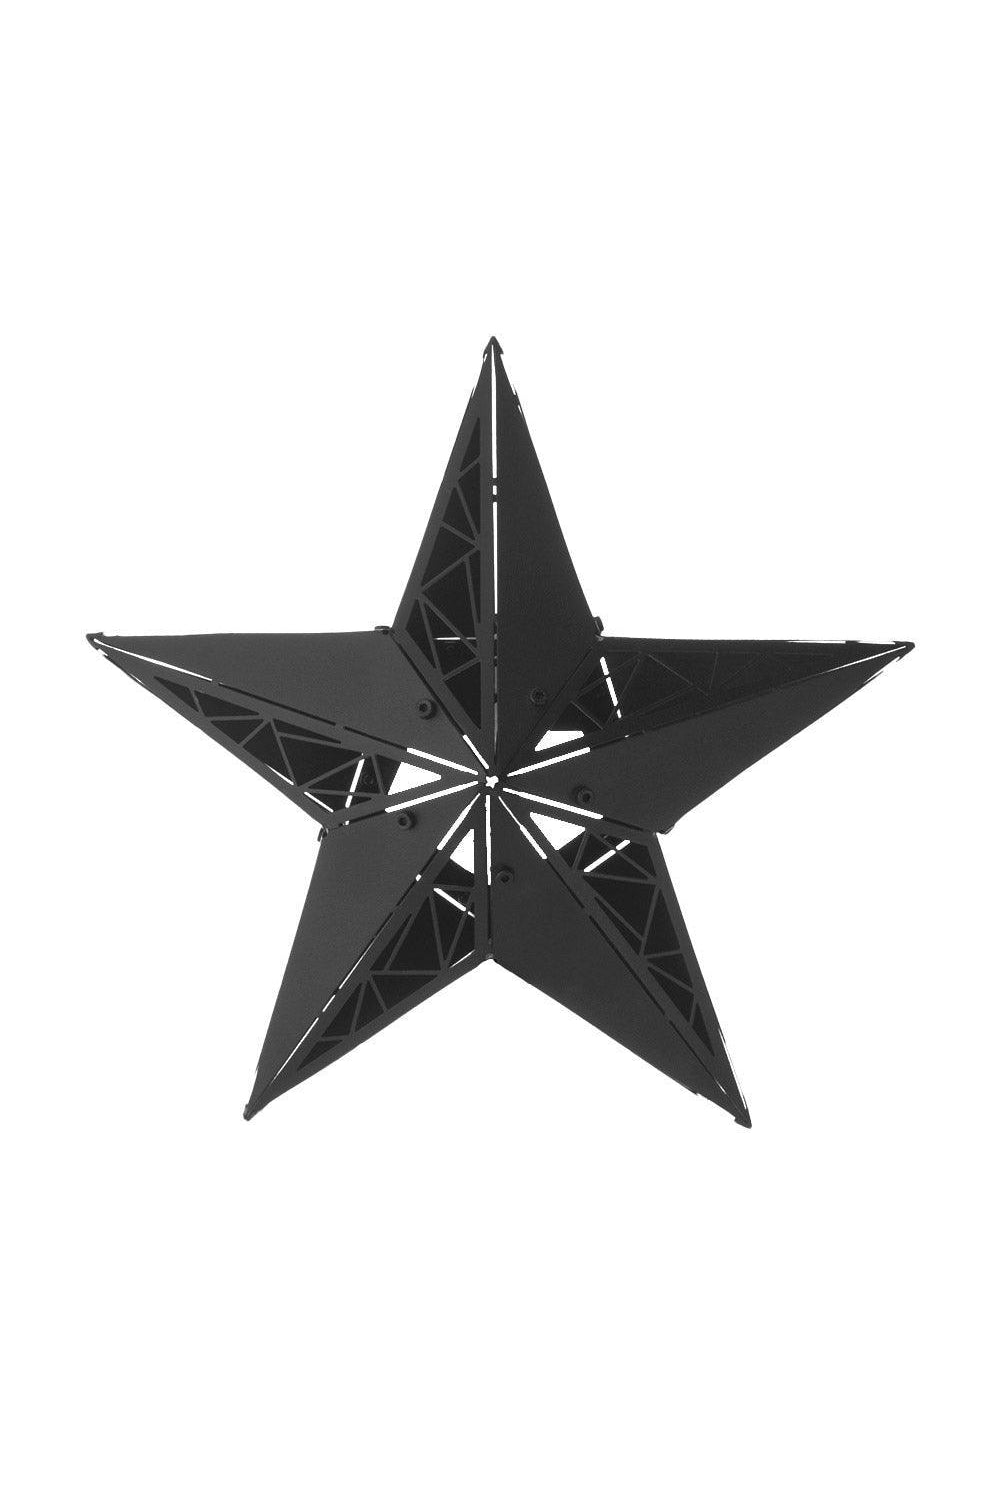 OTTOCKRAFT | Dekoratif Objeler | OTTOCKRAFT™ | SEREN - 3D Geometrik Metal Yıldız Figürü | Milagron 